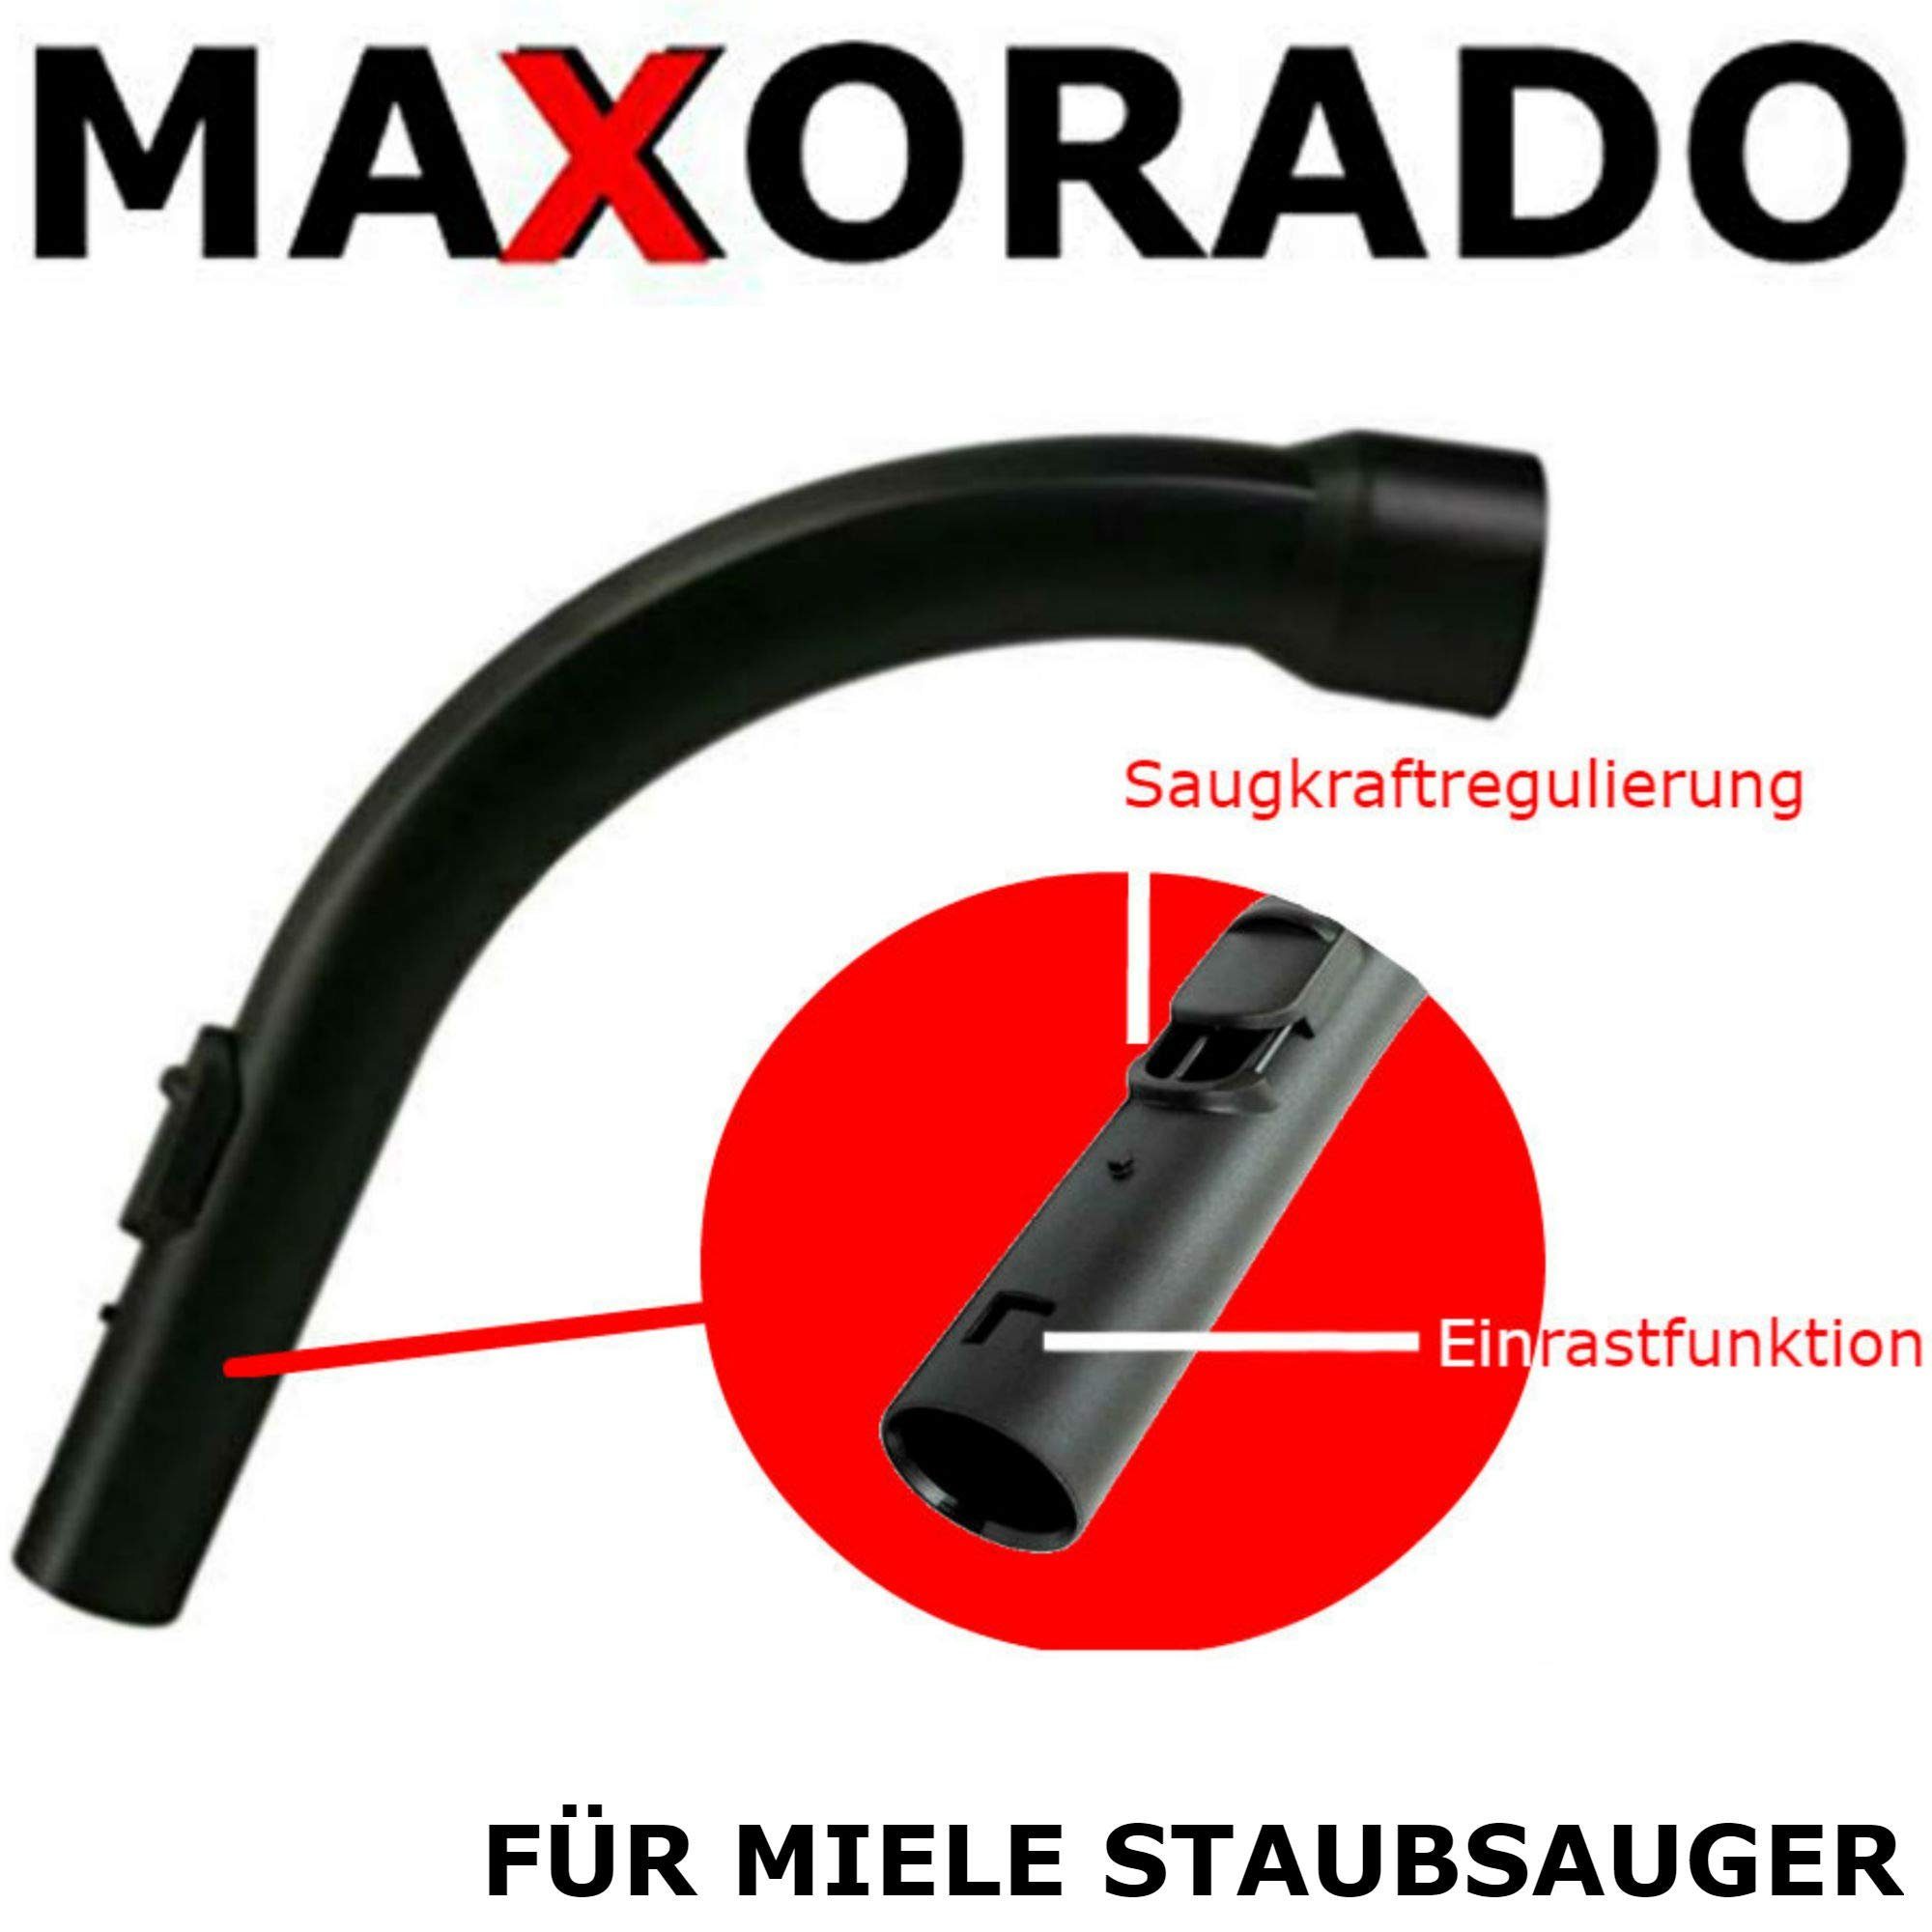 Maxorado Staubsaugerrohr Handgriff für Miele S8340 S 771 Tango S 712 S711 S  381 5269091 9442600, Zubehör für Miele Staubsauger